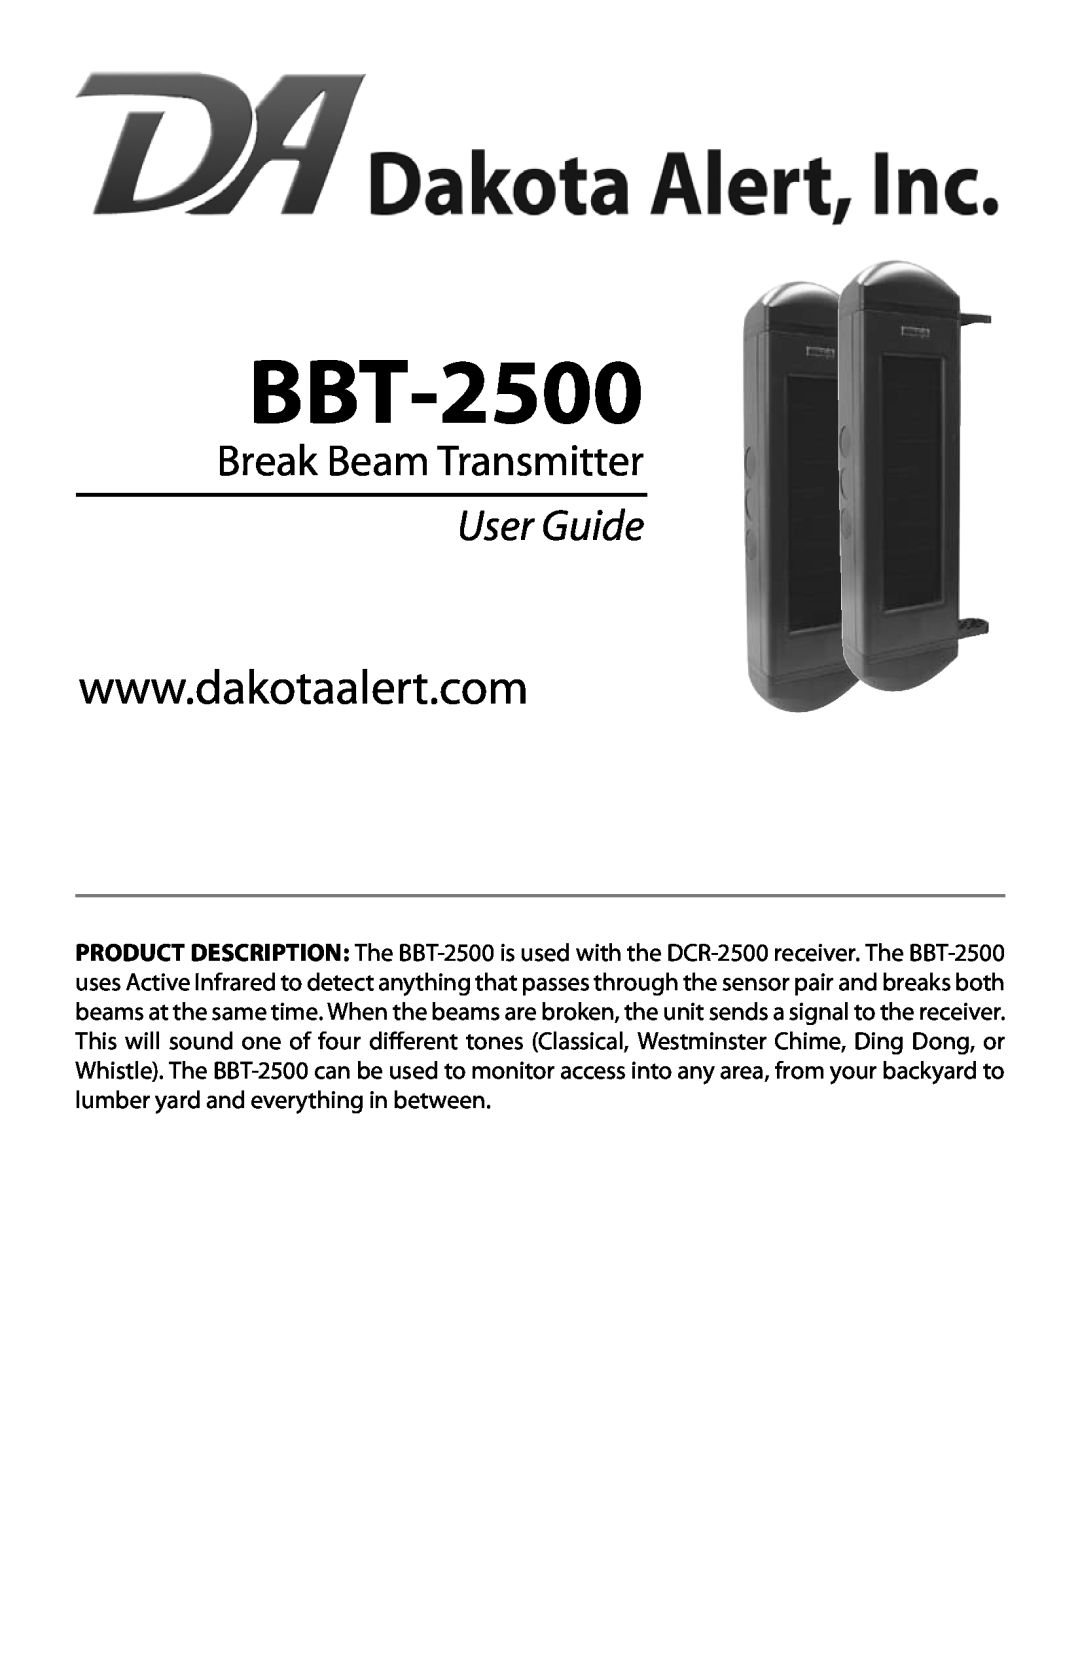 Dakota Alert BBT-2500 manual Break Beam Transmitter, User Guide 